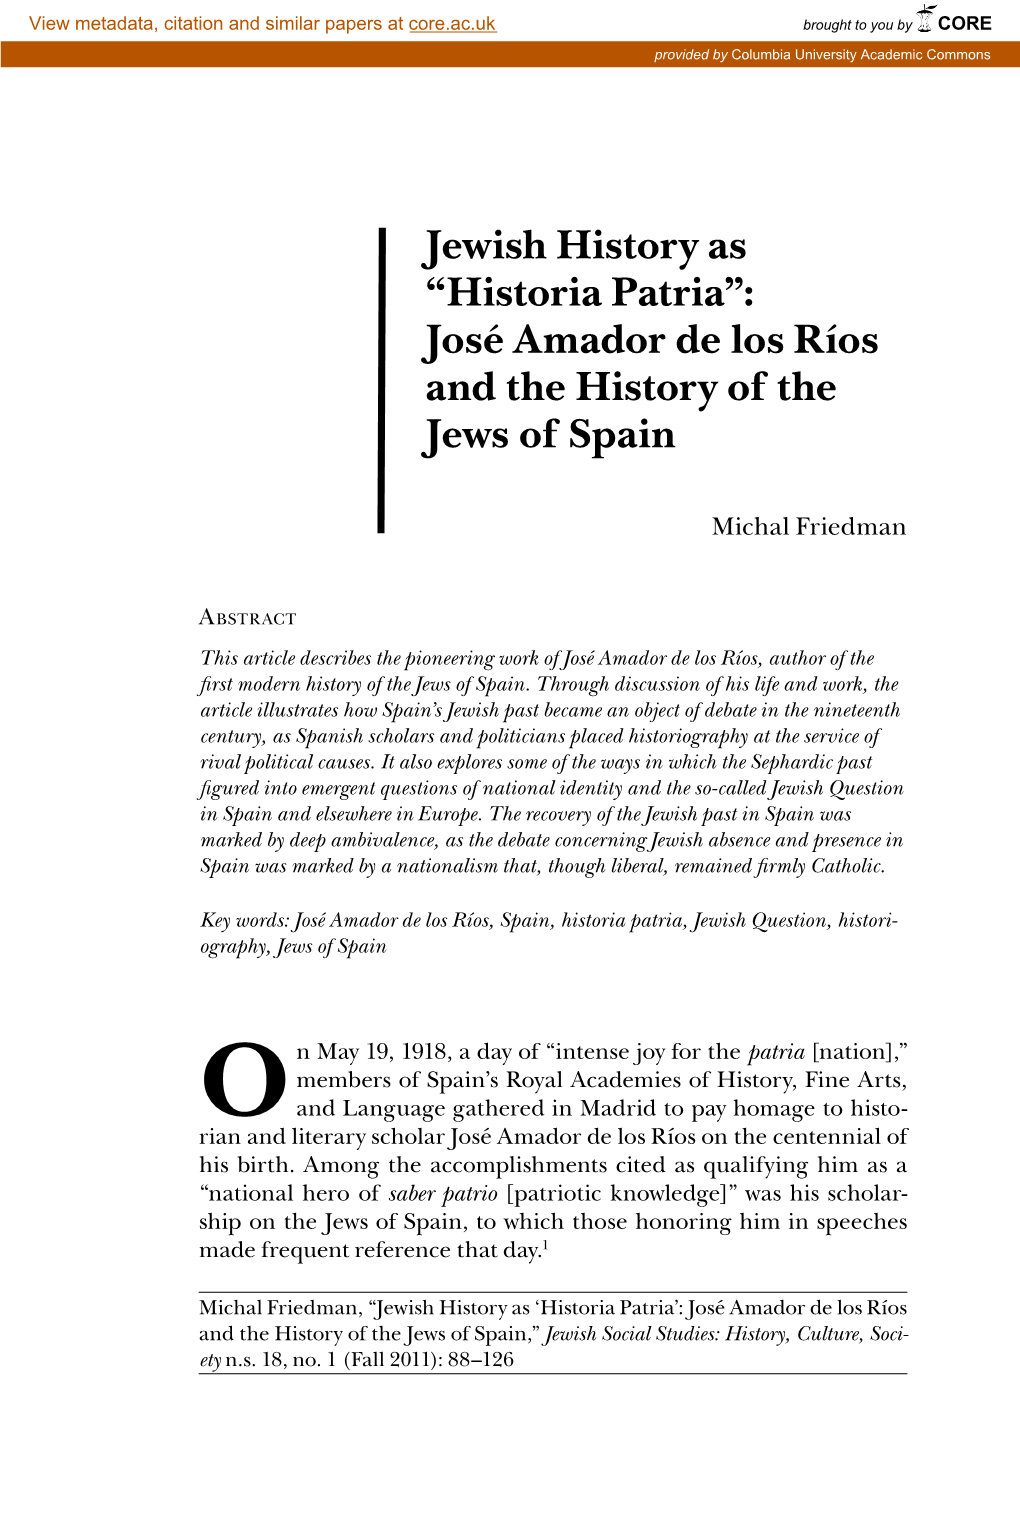 Jewish History As “Historia Patria”: José Amador De Los Ríos and the History of the Jews of Spain